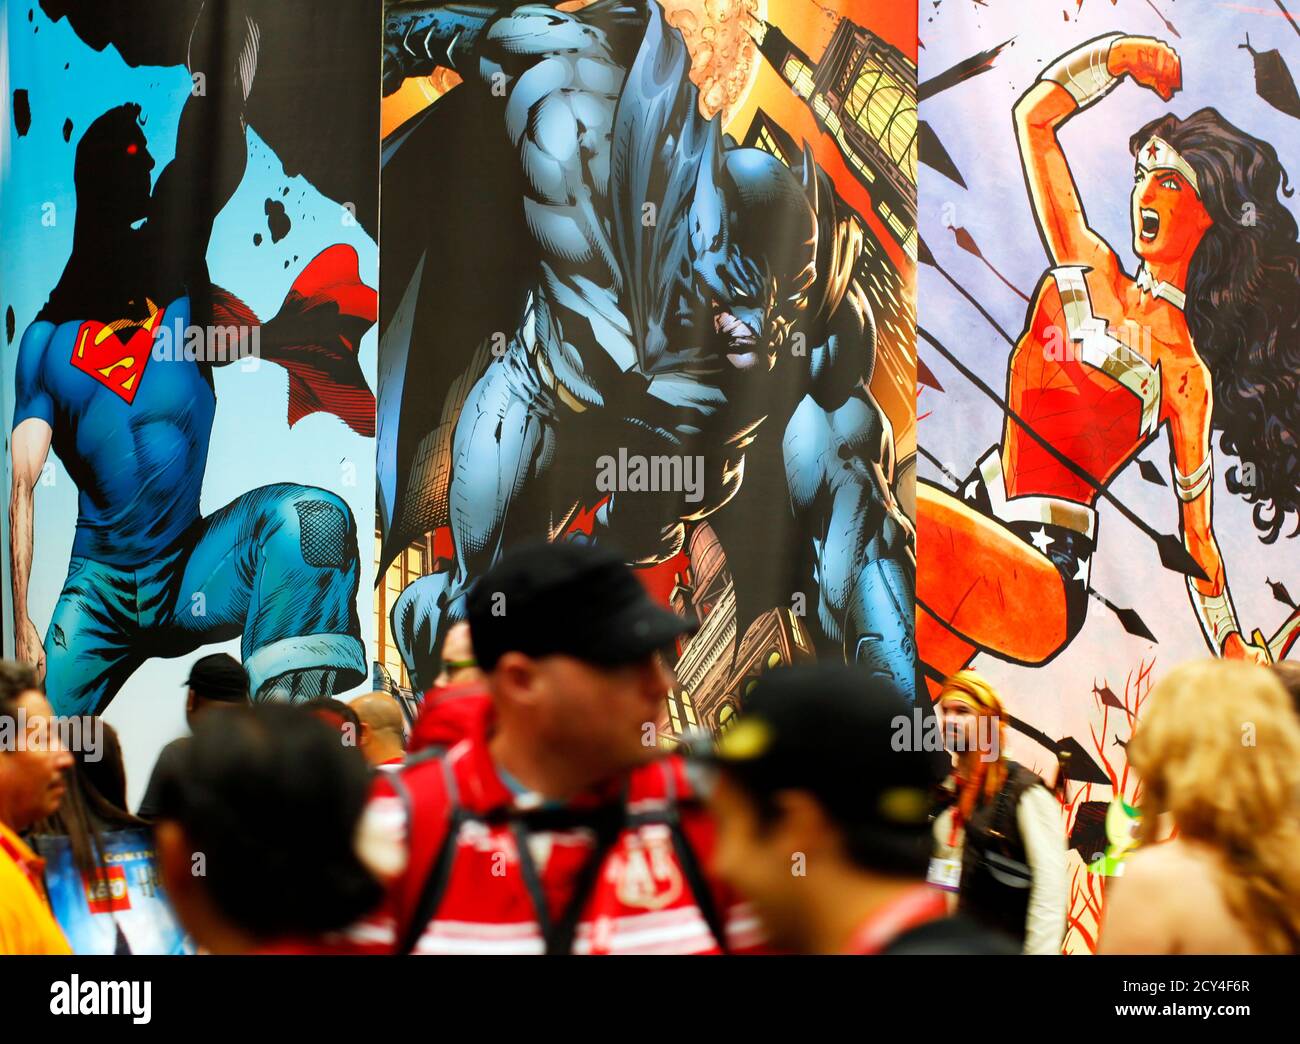 Die Teilnehmer gehen während der Popkultur-Veranstaltung in San Diego, Kalifornien, am 22. Juli 2011 auf der Comic Con durch die Convention Floor. REUTERS/Mike Blake (VEREINIGTE STAATEN - Tags: UNTERHALTUNG GESELLSCHAFT PROFIL) Stockfoto